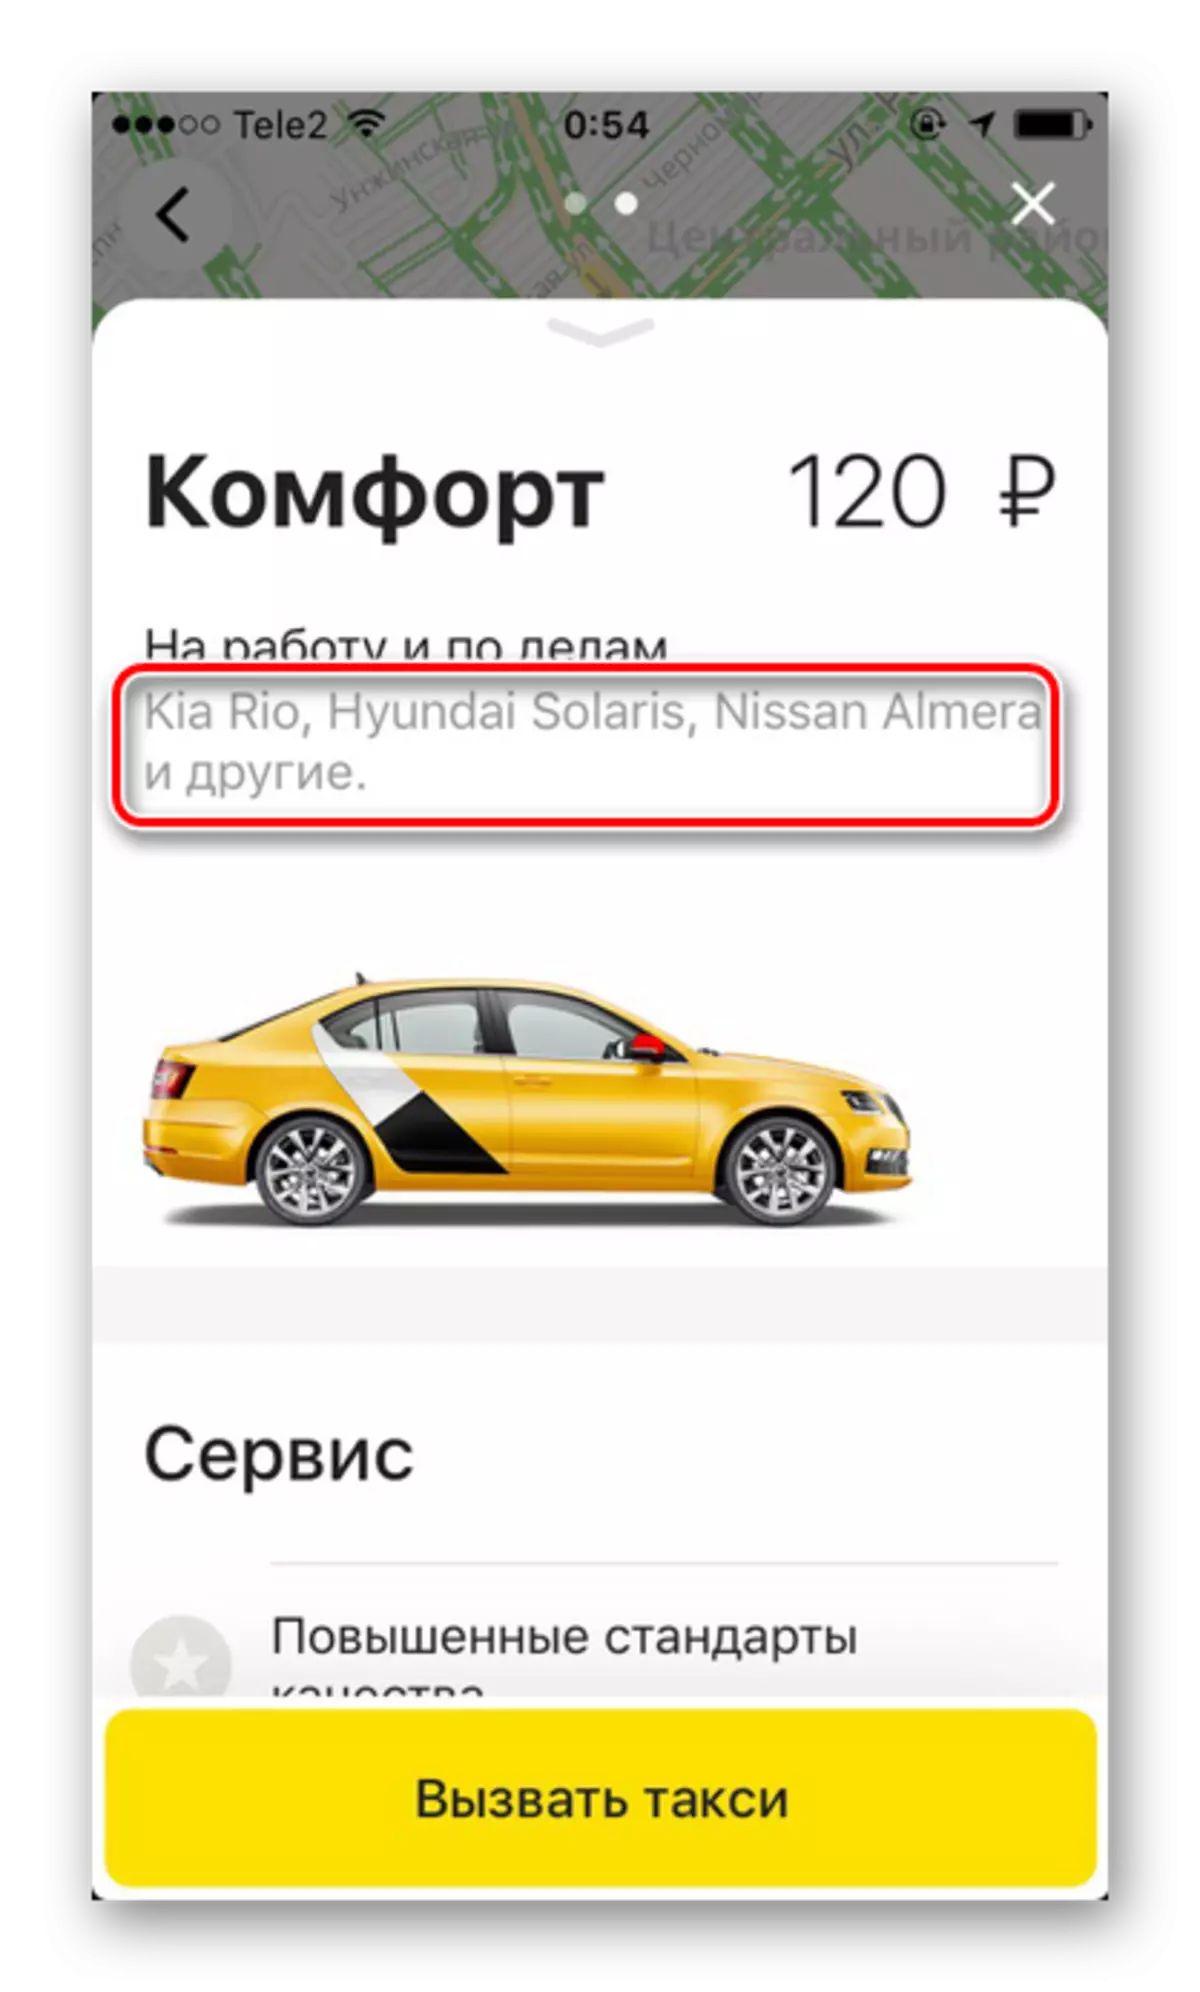 آلة العلامات التجارية في التعريفة الراحة في تطبيق Yandex.Taxi على اي فون